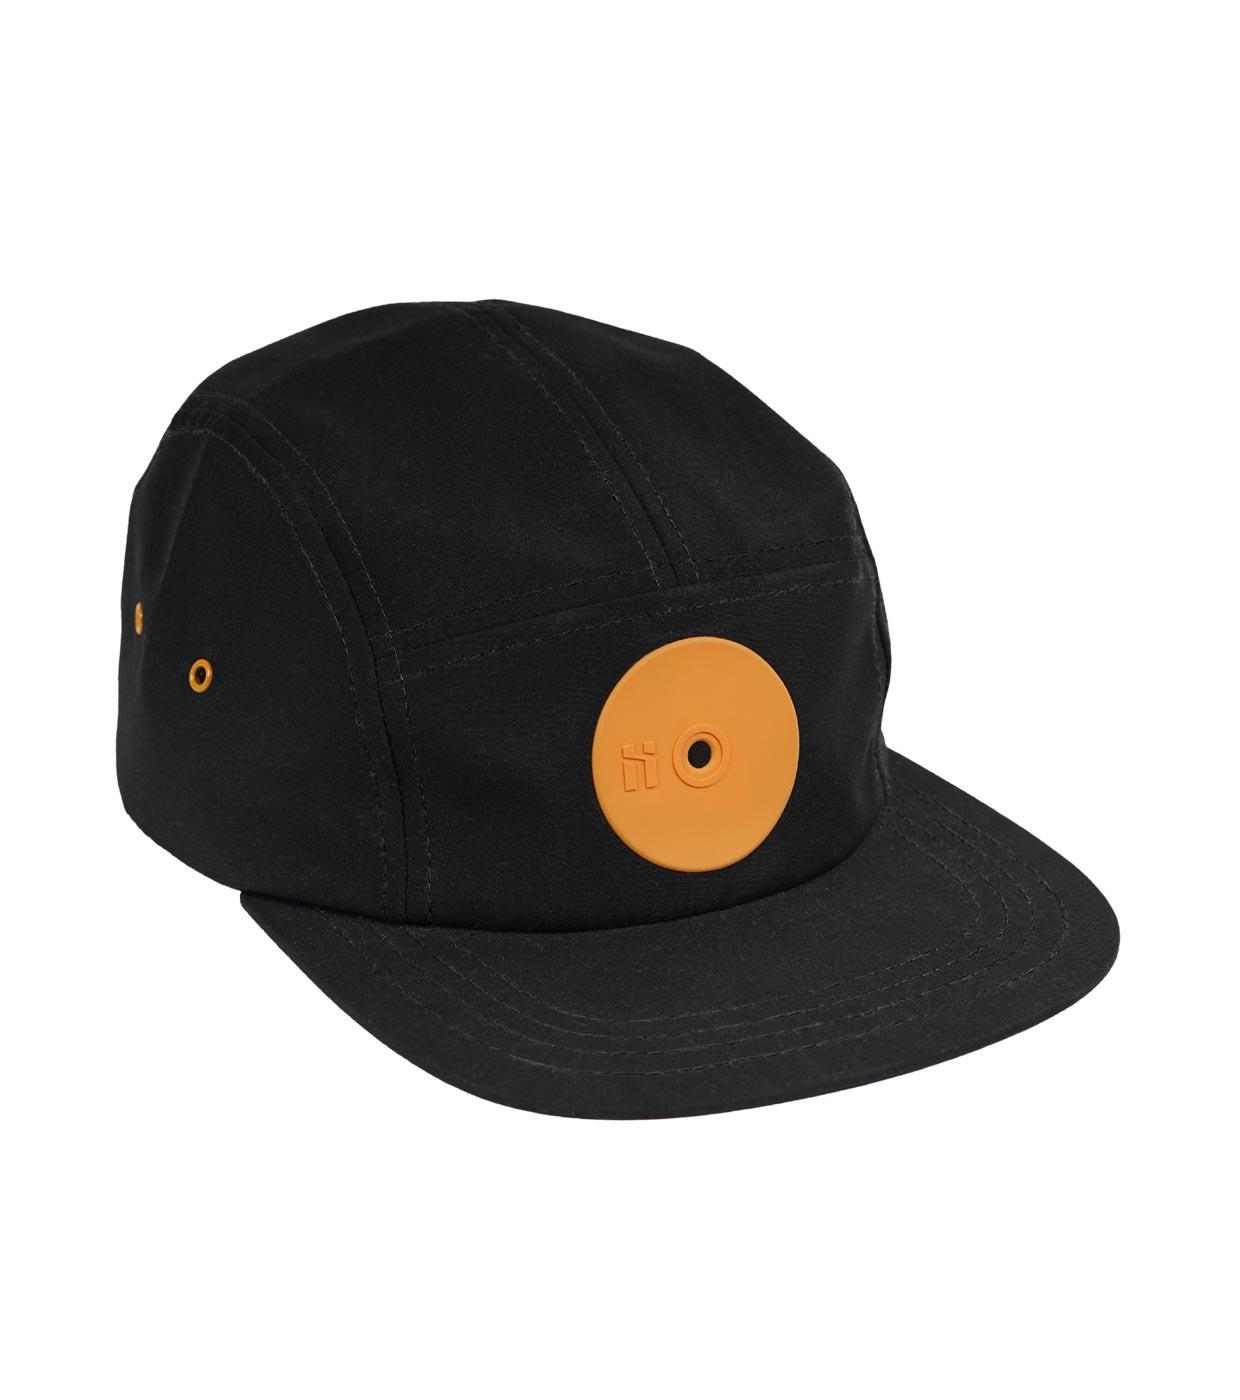 Fat Cap Logo - Mr. Serious fat cap series, Orange medium fat cap. Black 5 panel